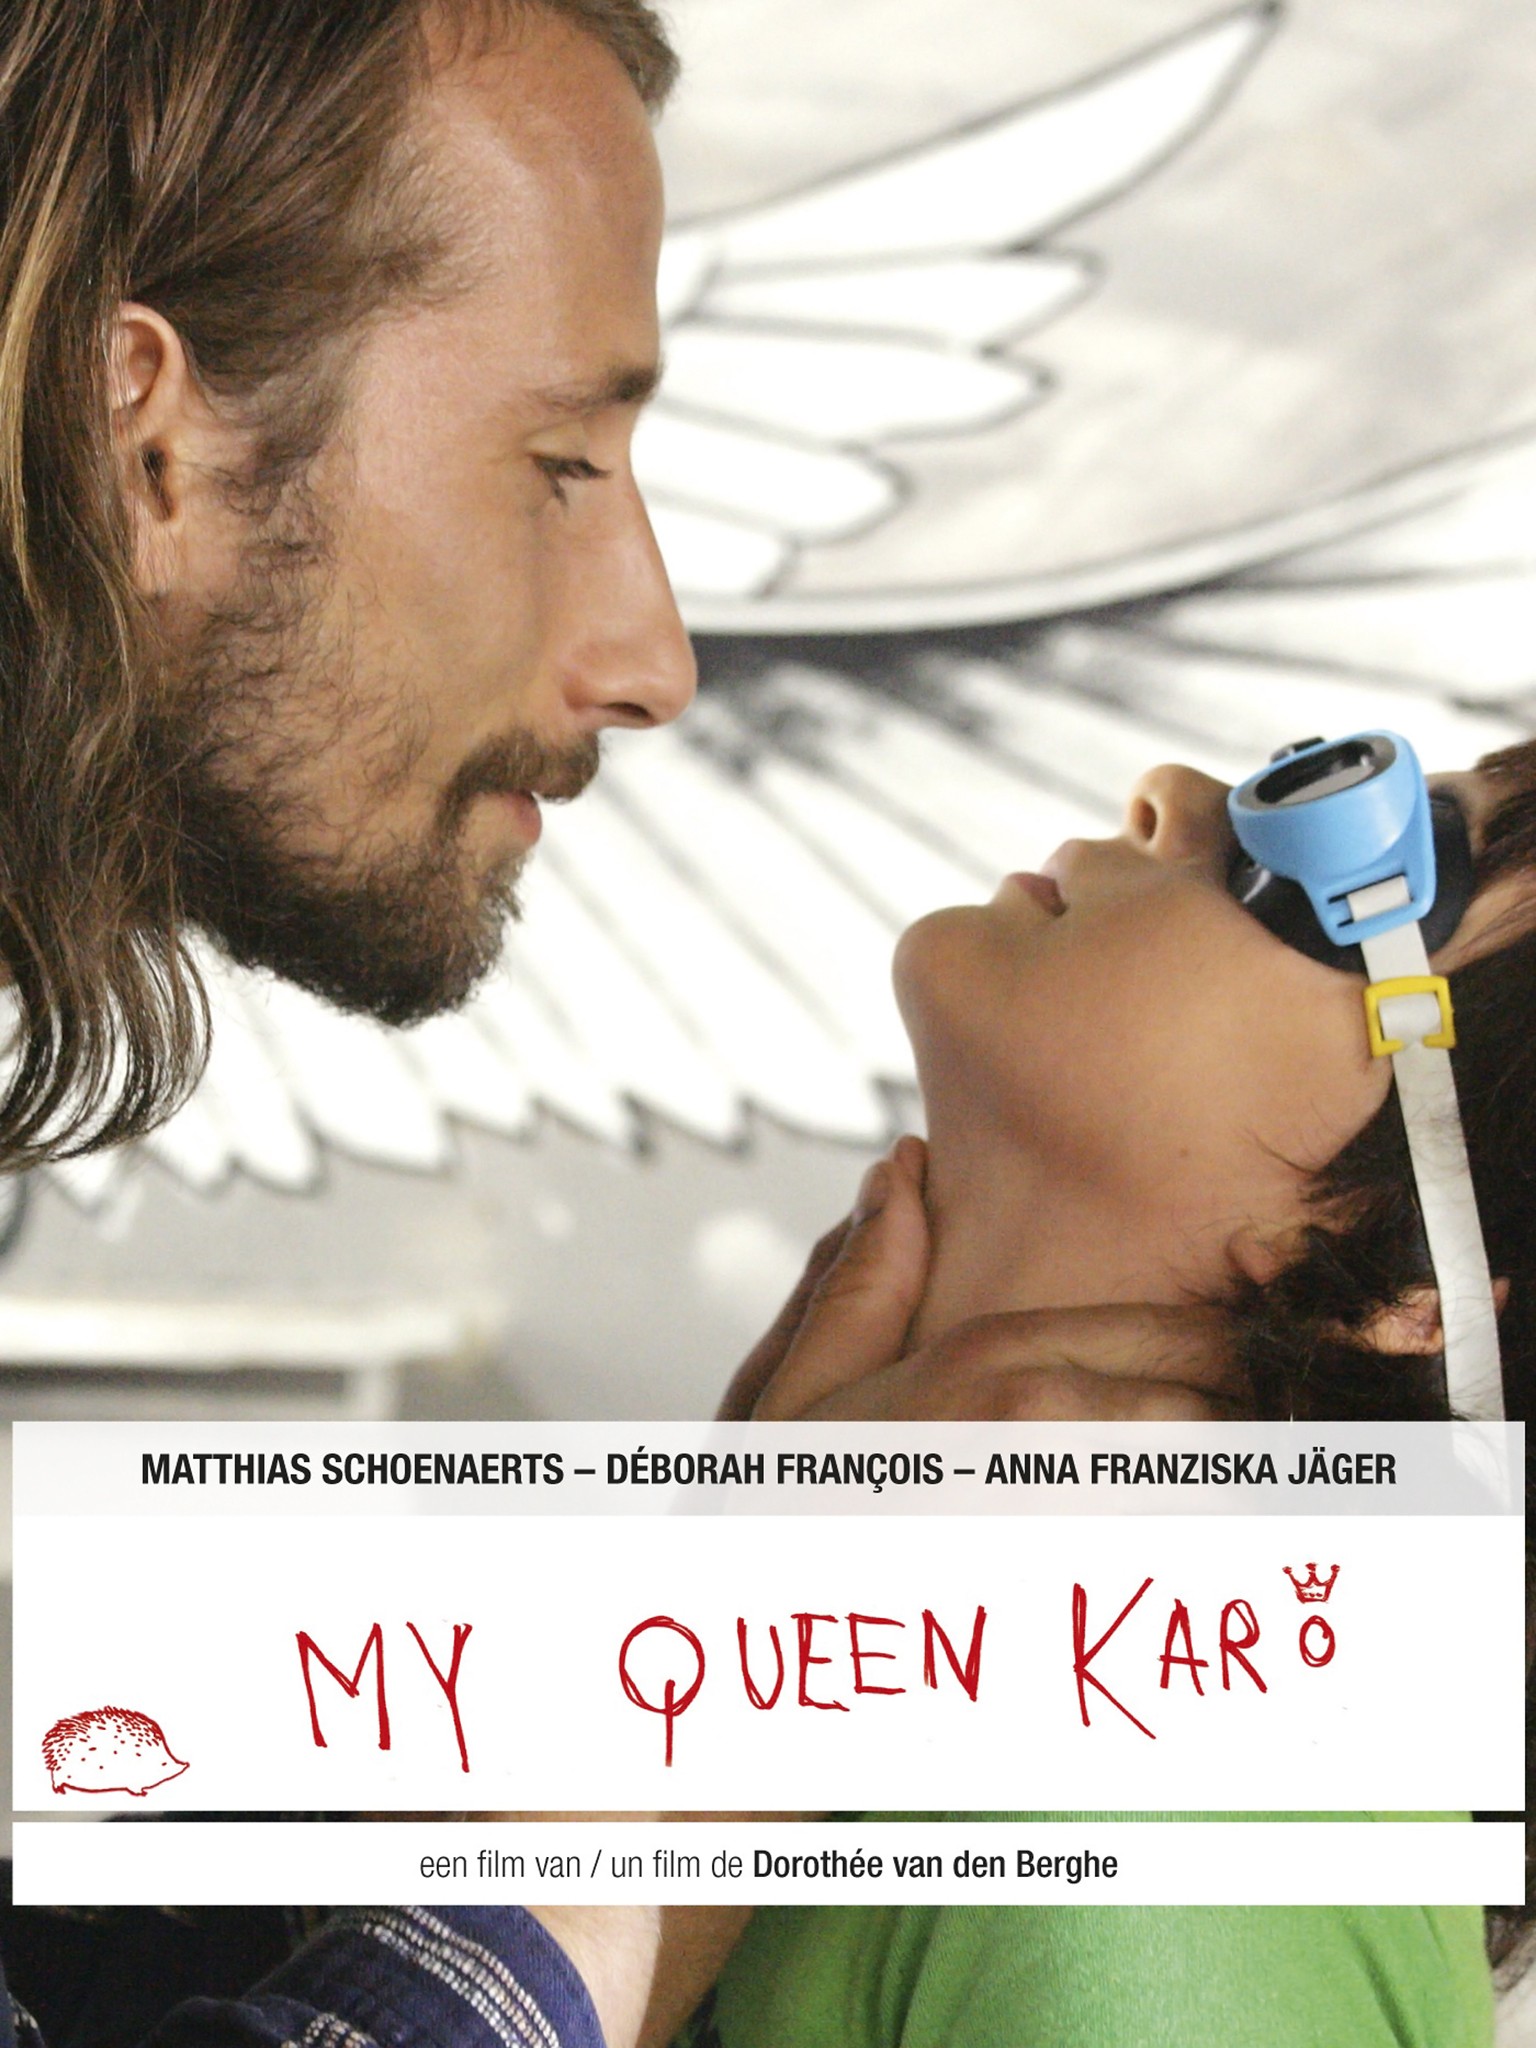 Queen karo movie